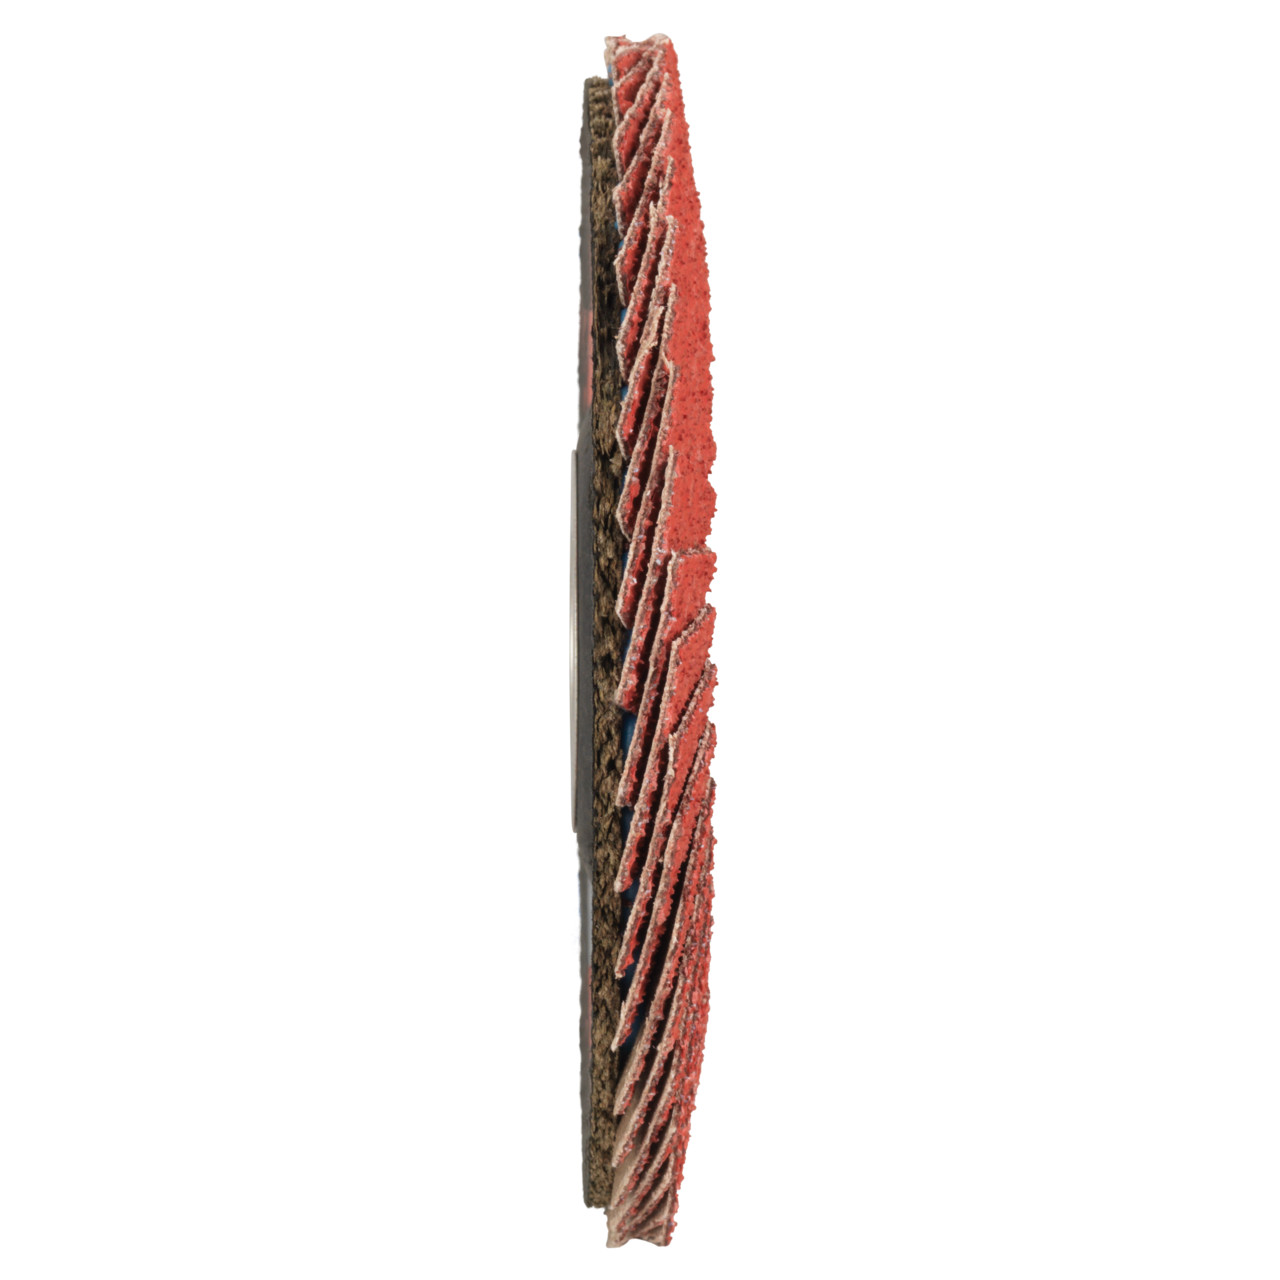 Tyrolit Rondelle éventail DxH 125x22,23 CERAMIC pour acier inoxydable, P40, Forme : 28A - modèle droit (modèle à corps en fibre de verre), Art. 719799